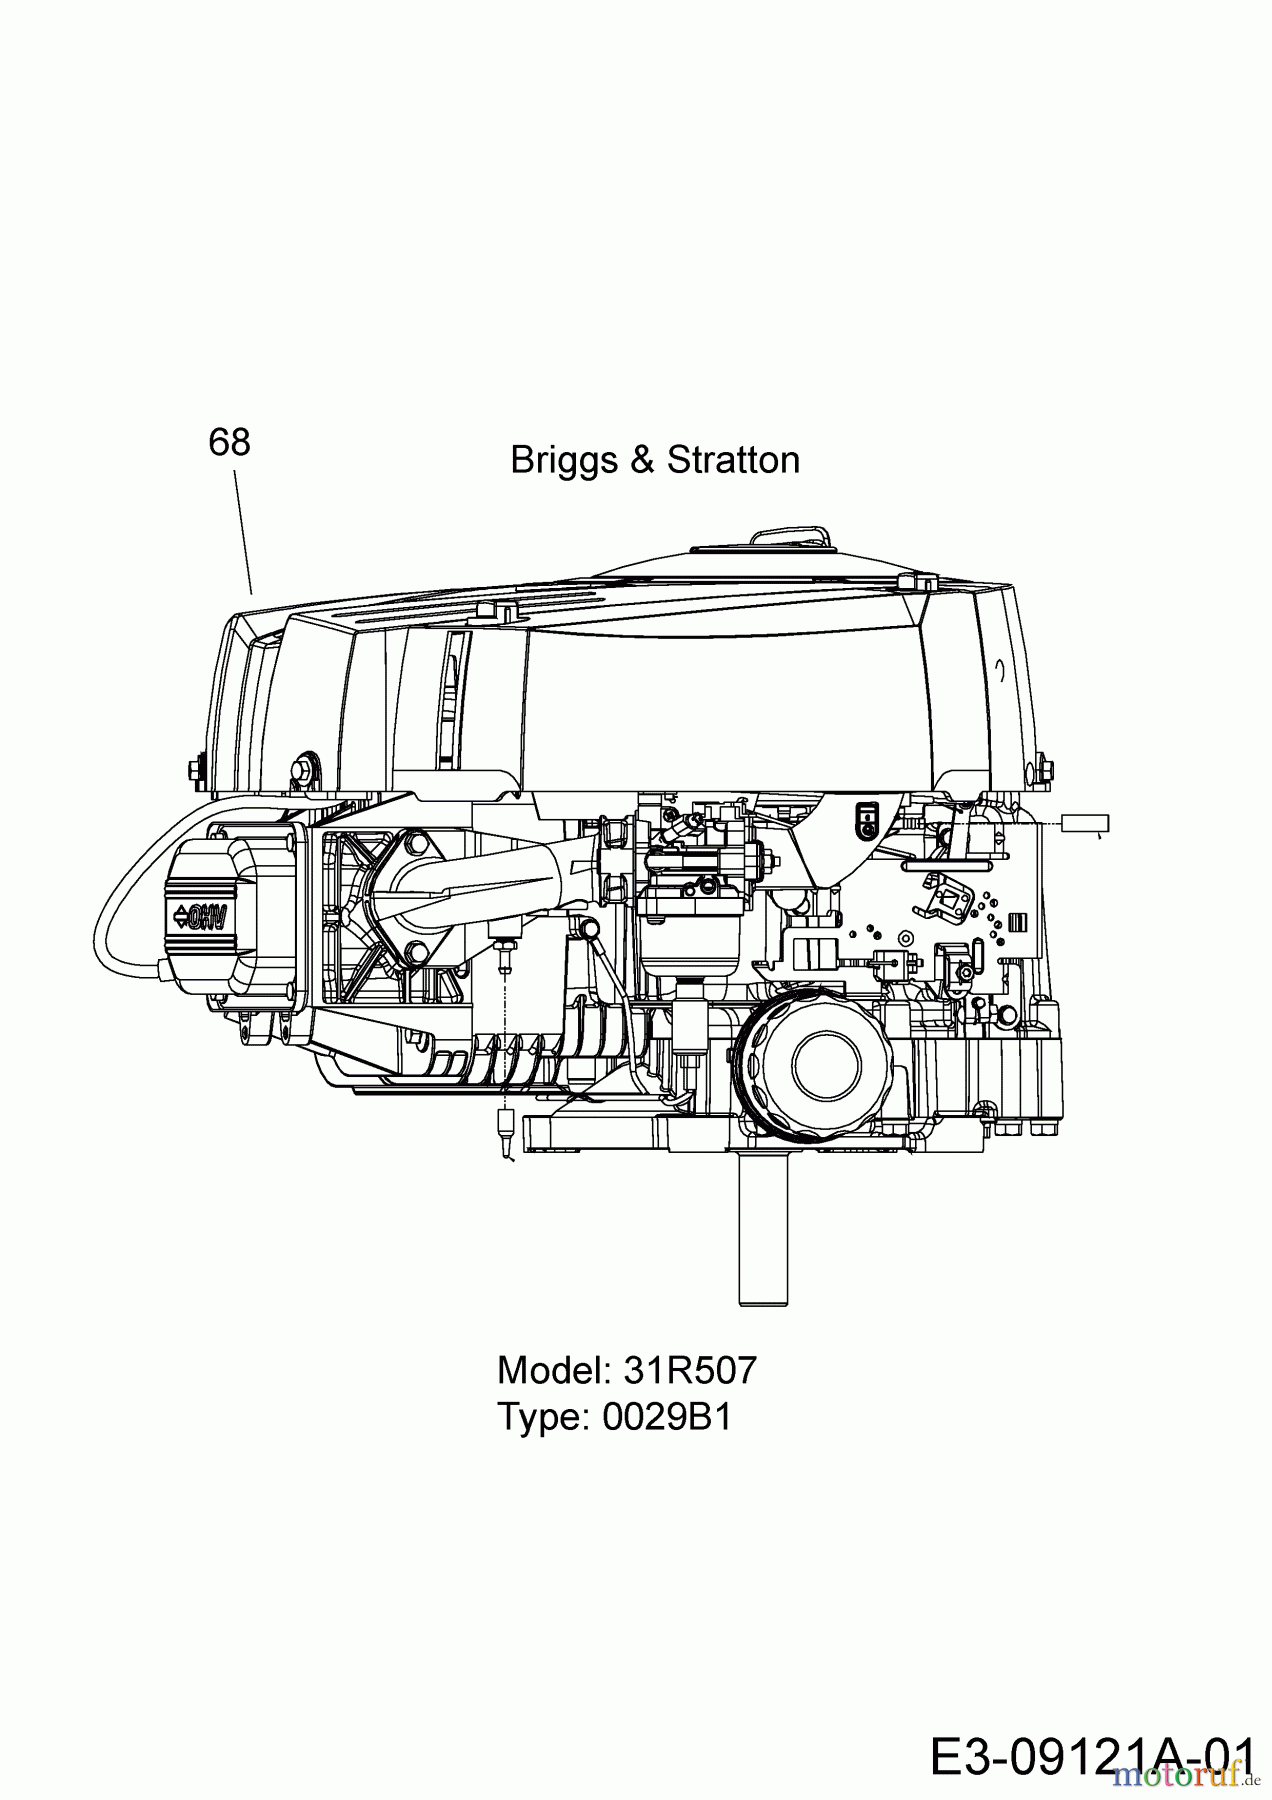  Wolf-Garten Lawn tractors Expert 92.155 H 13HM99WE650  (2016) Engine Briggs & Stratton